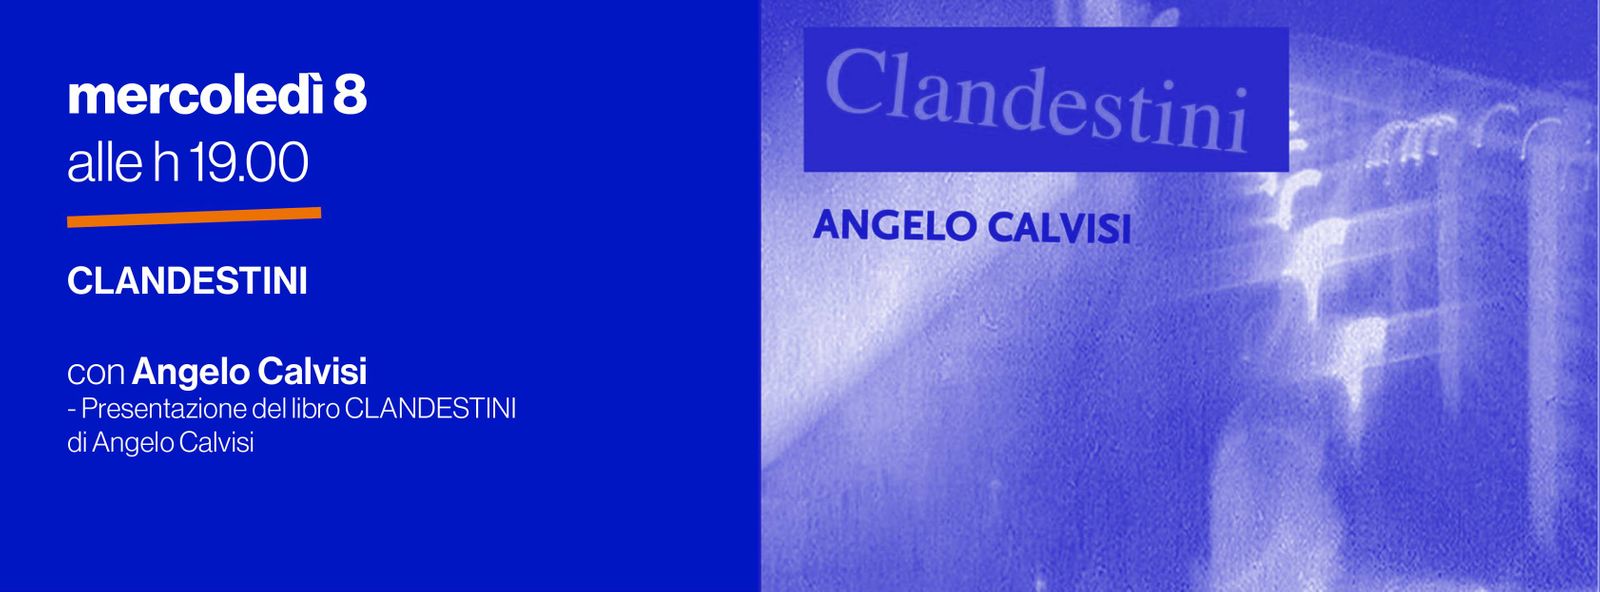 Presentazione del libro "Clandestini" - di Angelo Calvisi